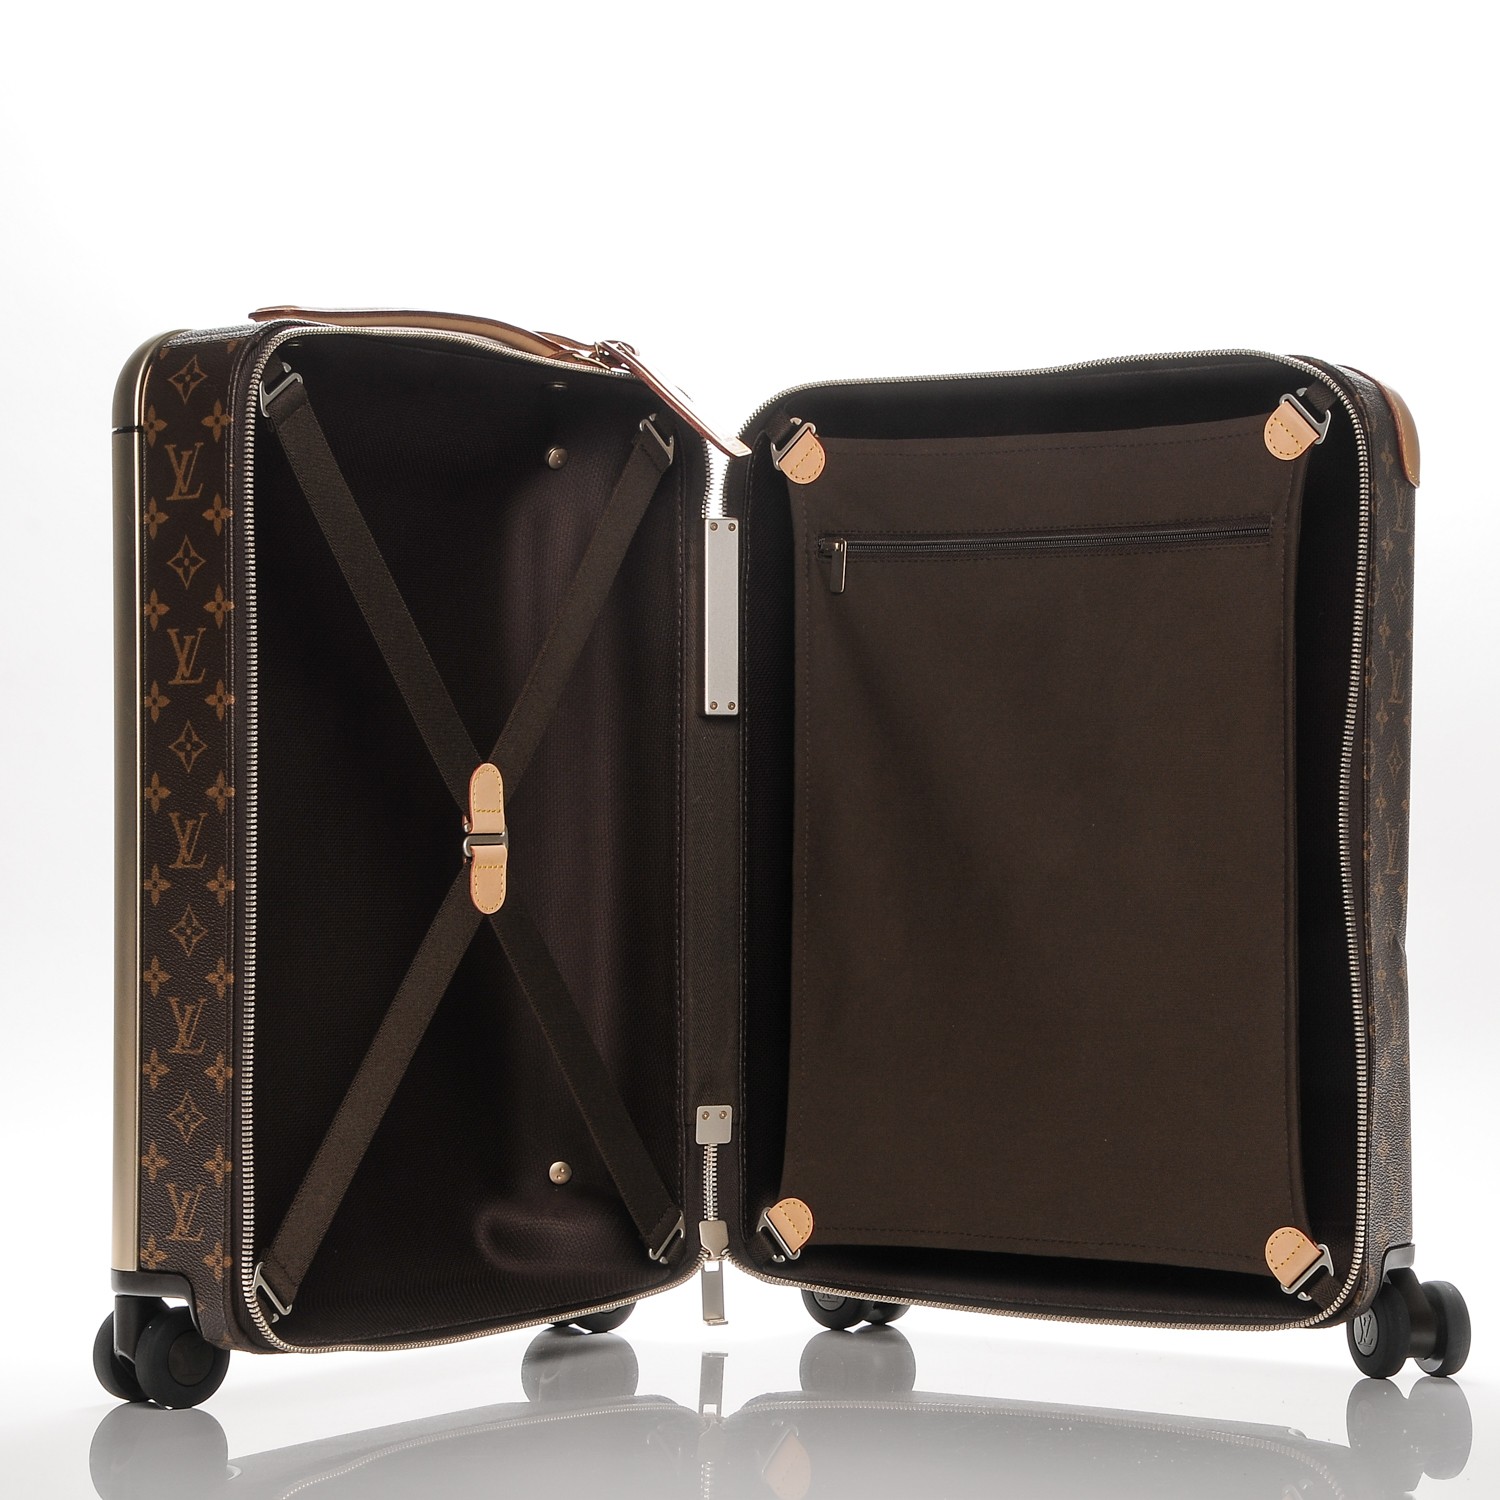 Louis Vuitton Horizon Soft Duffle Bag 55 Review & Unboxing (Virgil